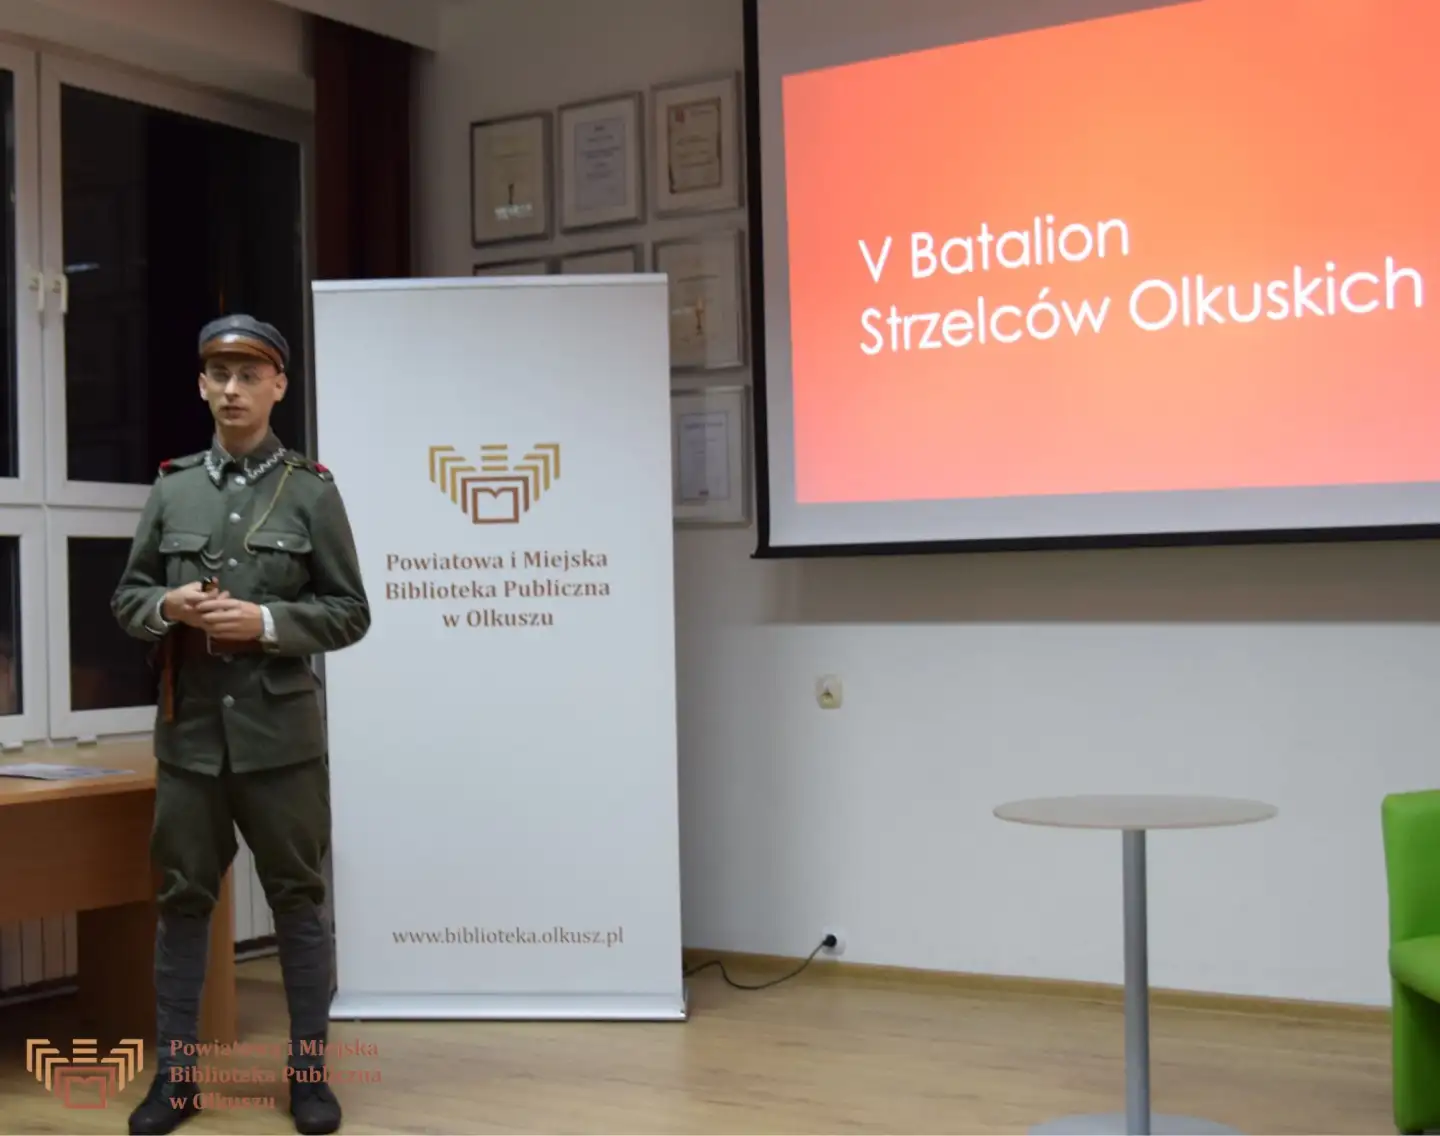 Zdjęcie przedstawia młodego mężczyznę w mundurze żołnierza AK. Za nim stoi biały baner z logo i napisem Powiatowa i Miejska Biblioteka Publiczna w Olkuszu oraz ekran z wyświetlonym slajdem i napisem: V Batalion Strzelców Olkuskich.